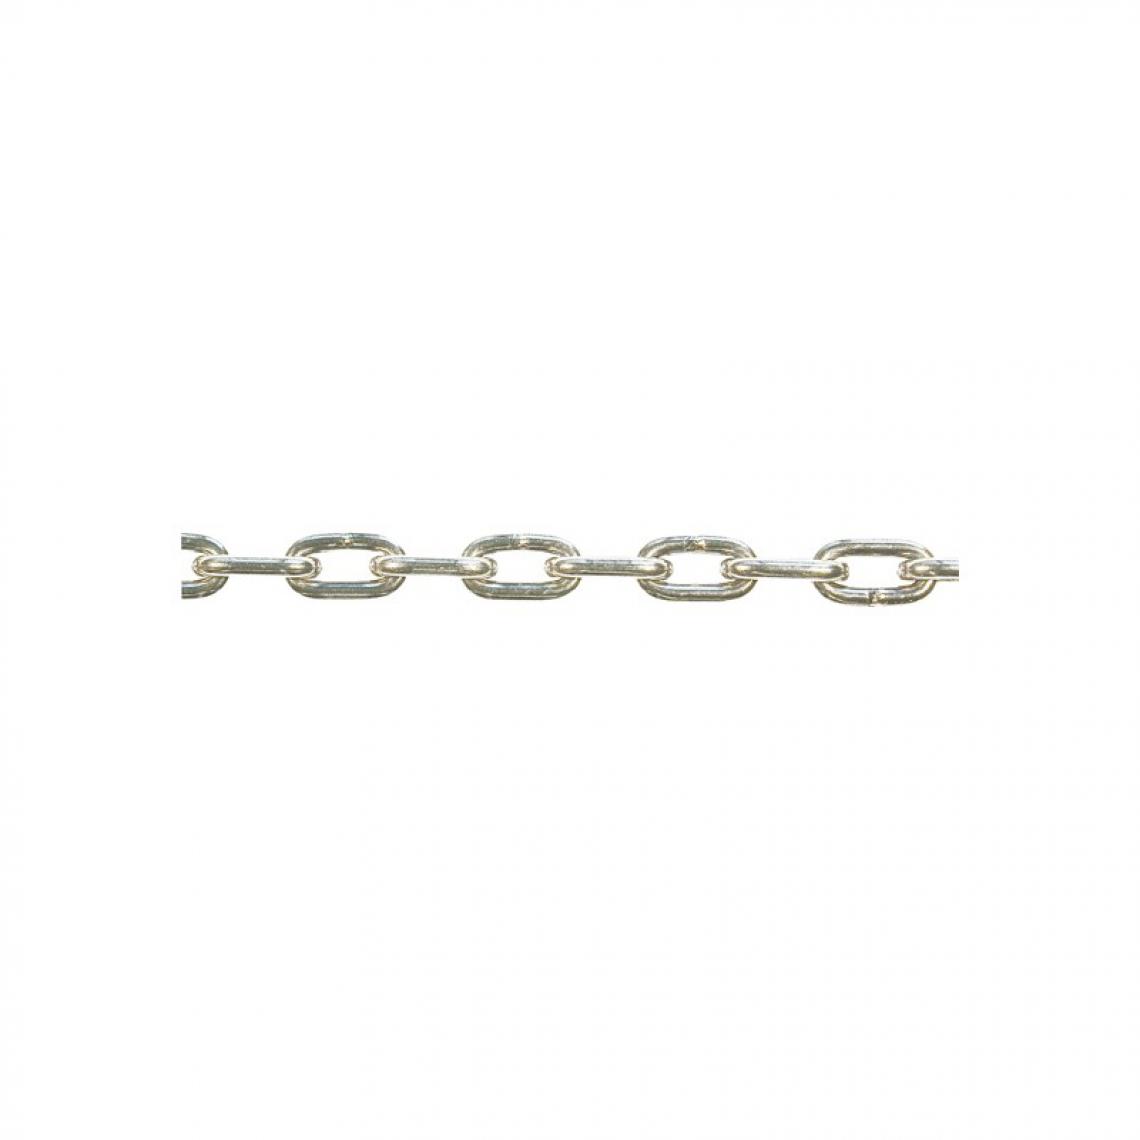 marque generique - Chaine DIN766-A 4x16 inoxydable 30 m (Par 30) - Corde et sangle